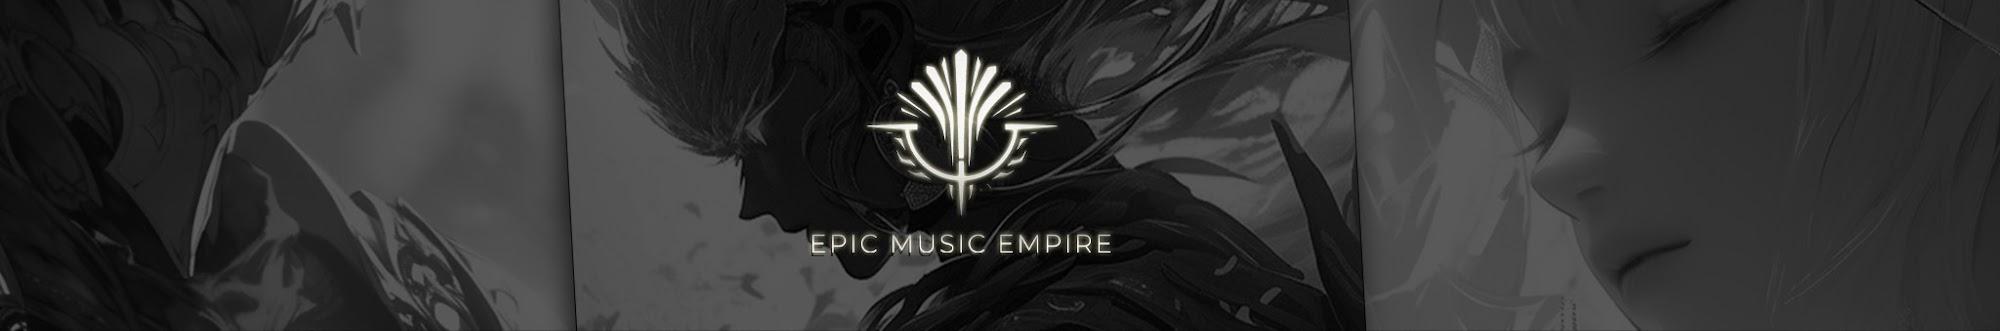 Epic Music Empire